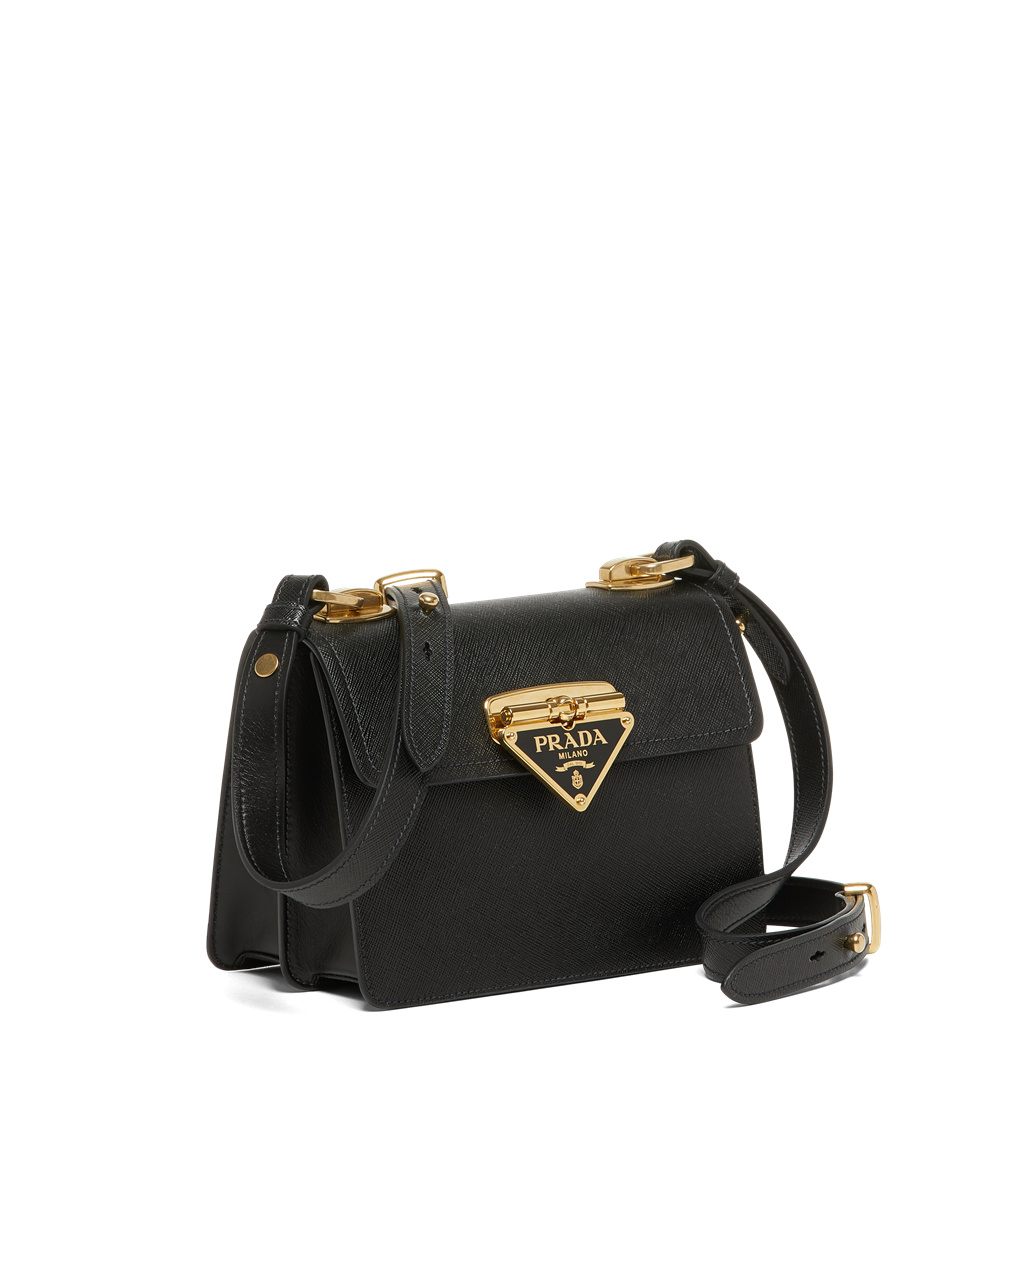 Prada - Black Saffiano Leather Bag